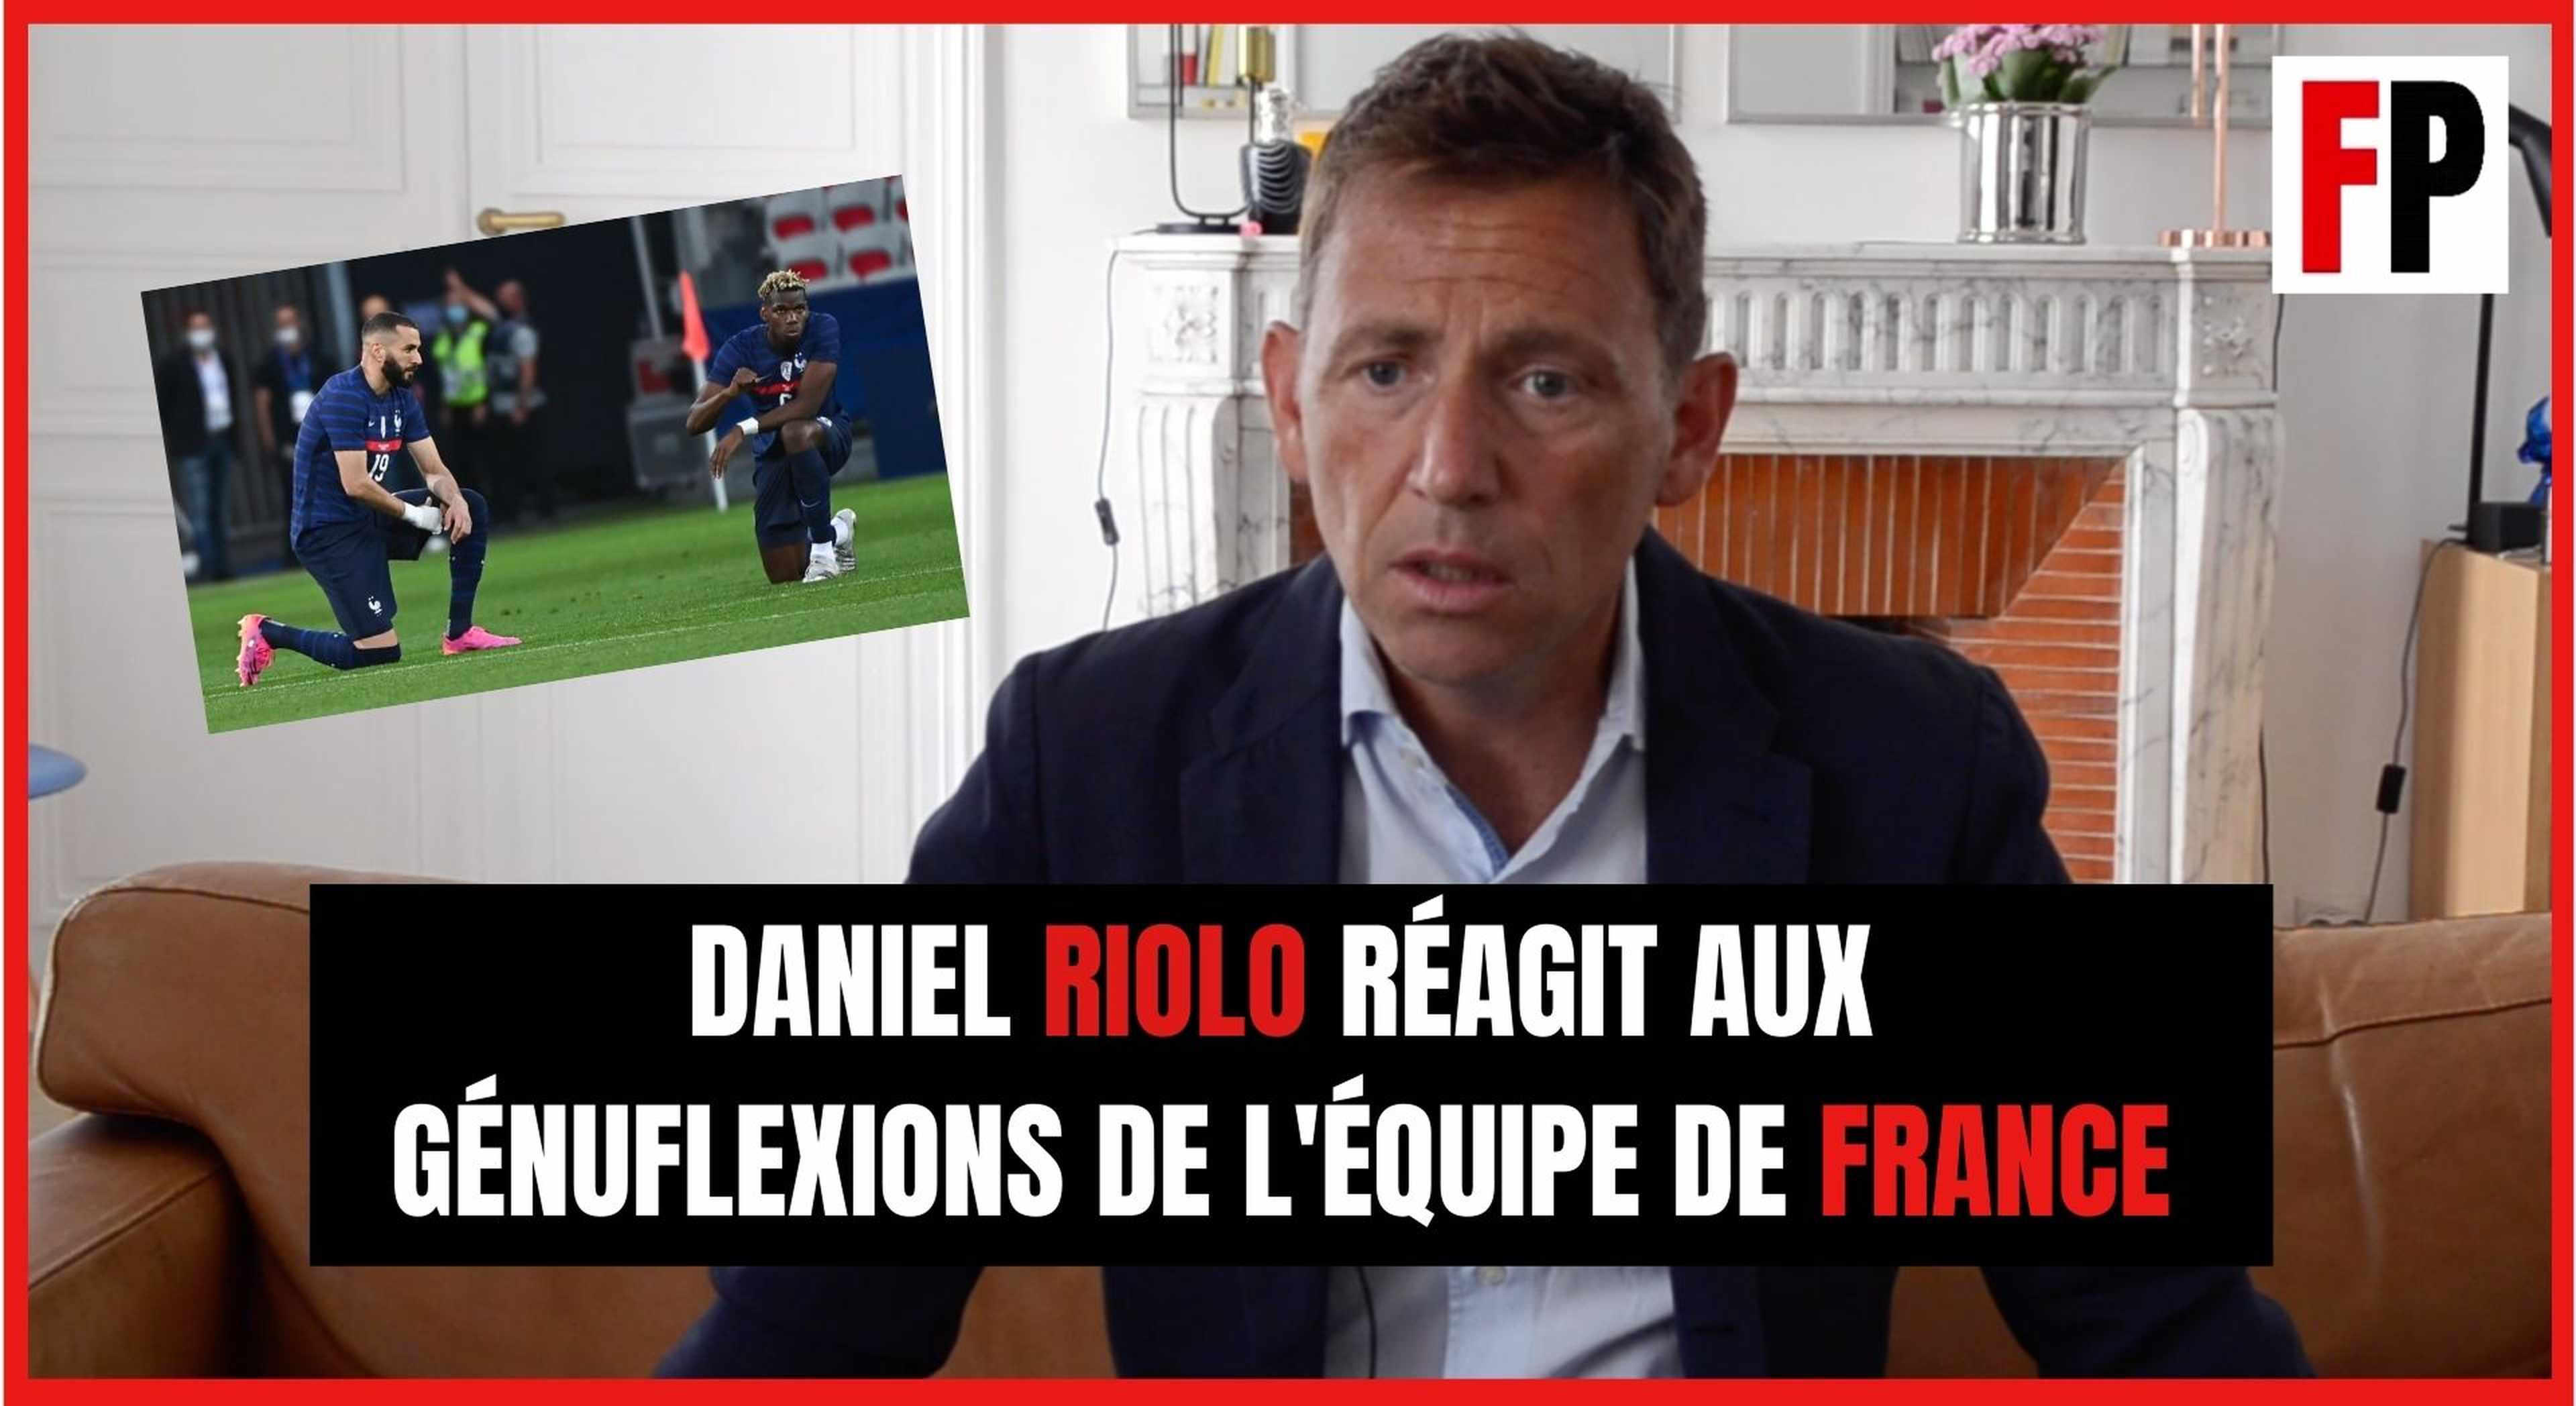 Daniel Riolo réagit aux génuflexions de l'équipe de France